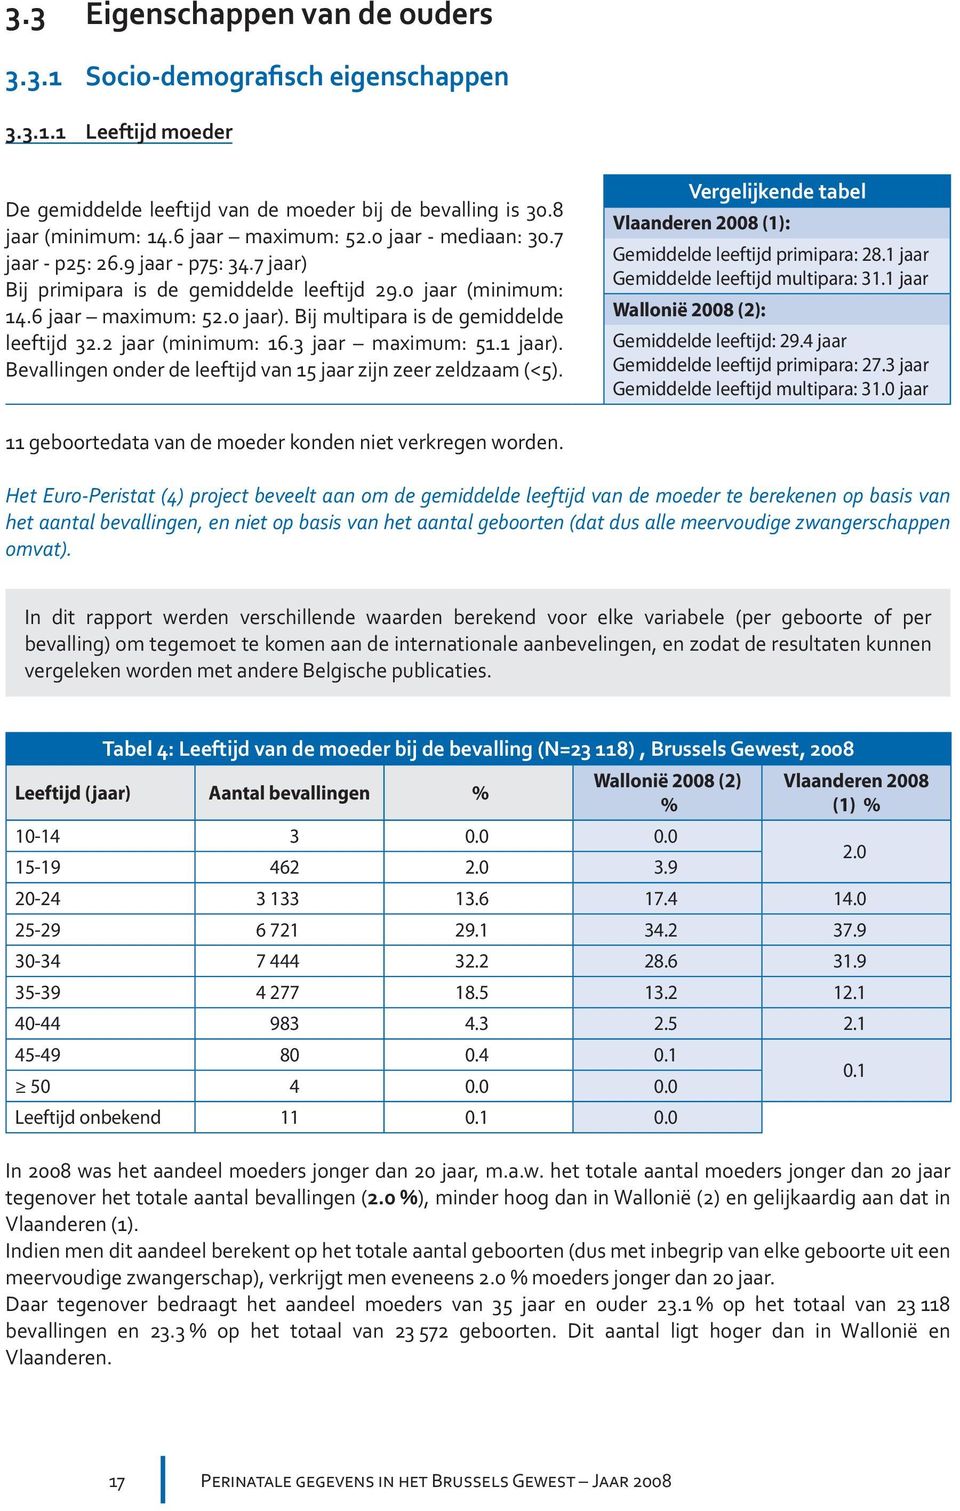 2 jaar (minimum: 16.3 jaar maximum: 51.1 jaar). Bevallingen onder de leeftijd van 15 jaar zijn zeer zeldzaam (<5). Vergelijkende tabel Vlaanderen 2008 (1): Gemiddelde leeftijd primipara: 28.